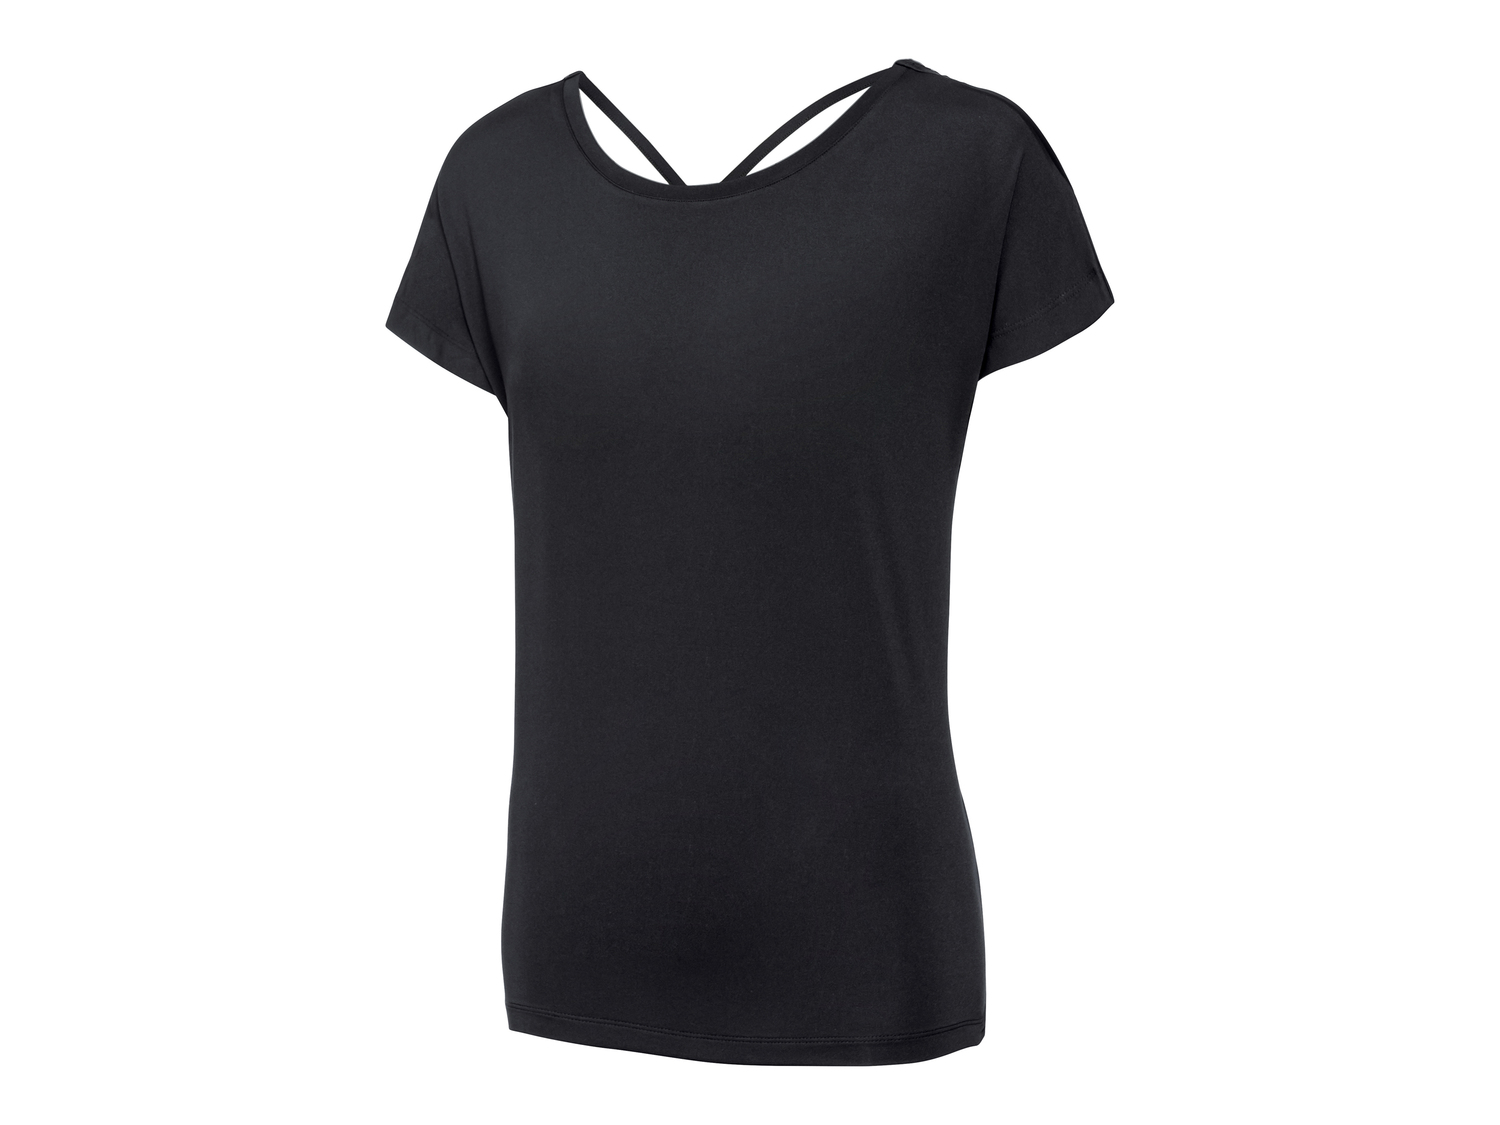 T-shirt sportiva da donna Crivit, prezzo 3.99 &#8364; 
Misure: S-L
Taglie disponibili

Caratteristiche

- ...